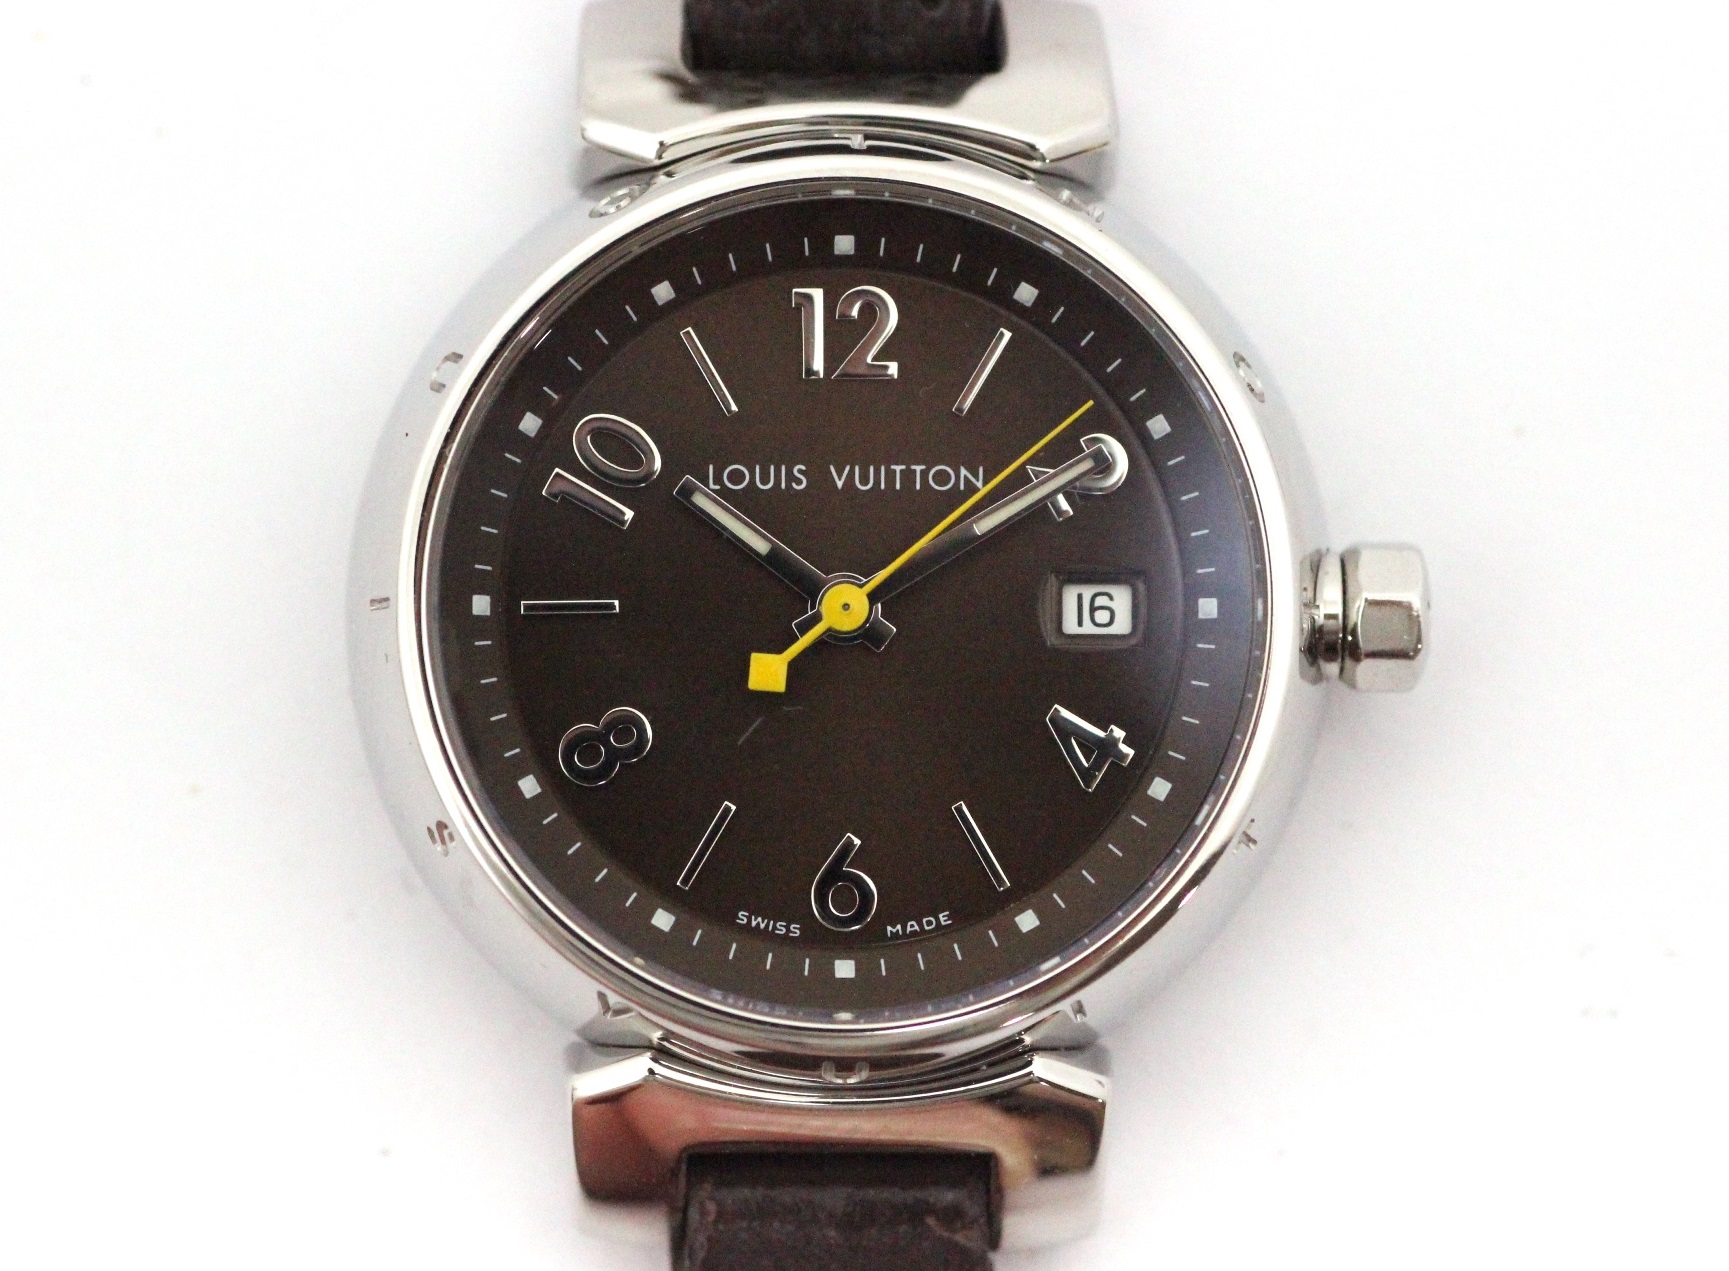 LOUIS VUITTON ルイ・ヴィトン 腕時計 タンブール Q1211 ブラウン ...